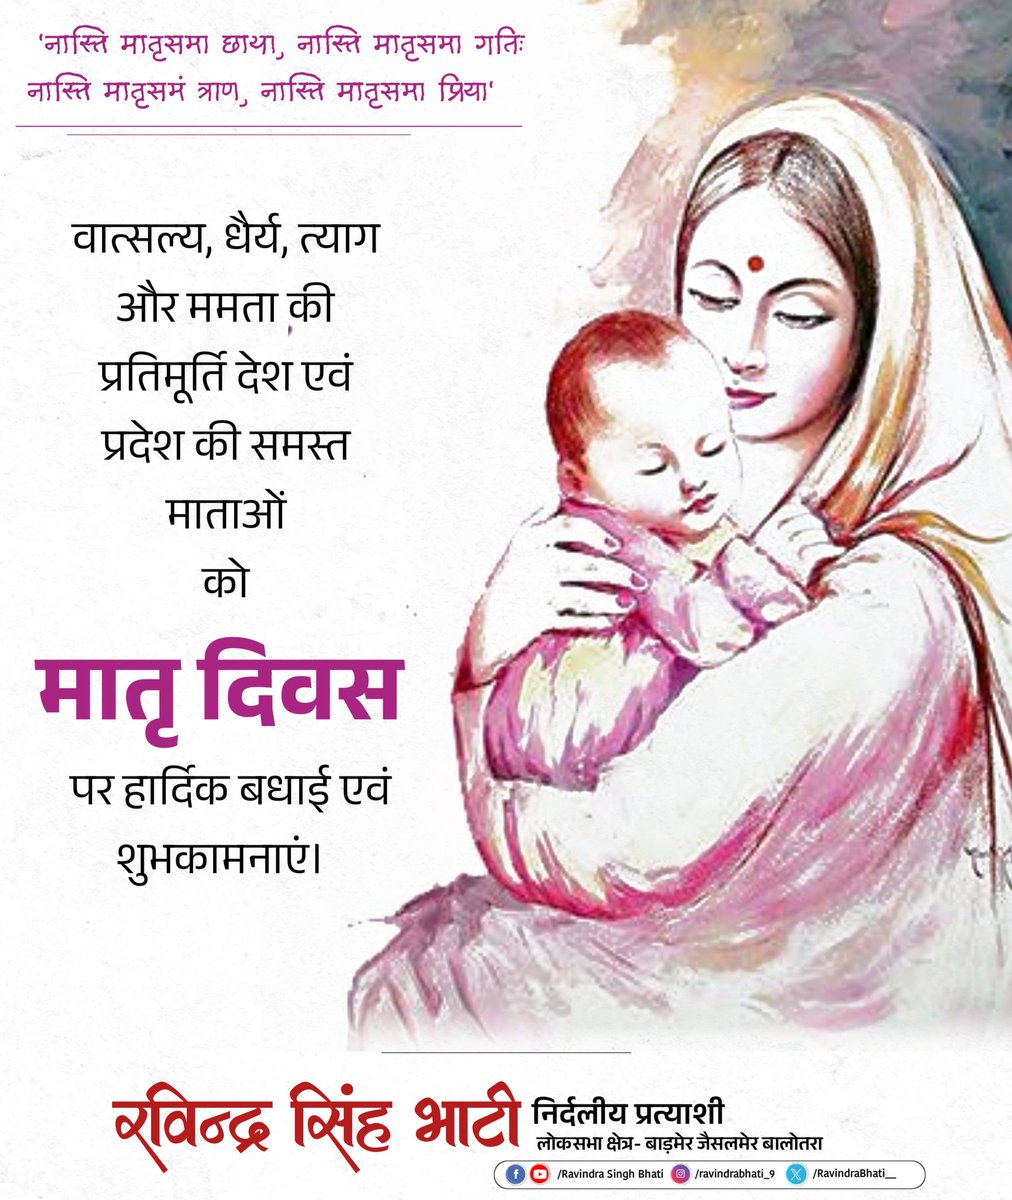 वात्सल्य, धैर्य, त्याग और ममता की प्रतिमूर्ति देश एवं प्रदेश की समस्त माताओं को मातृ दिवस पर हार्दिक बधाई एवं शुभकामनाएं। #MothersDay